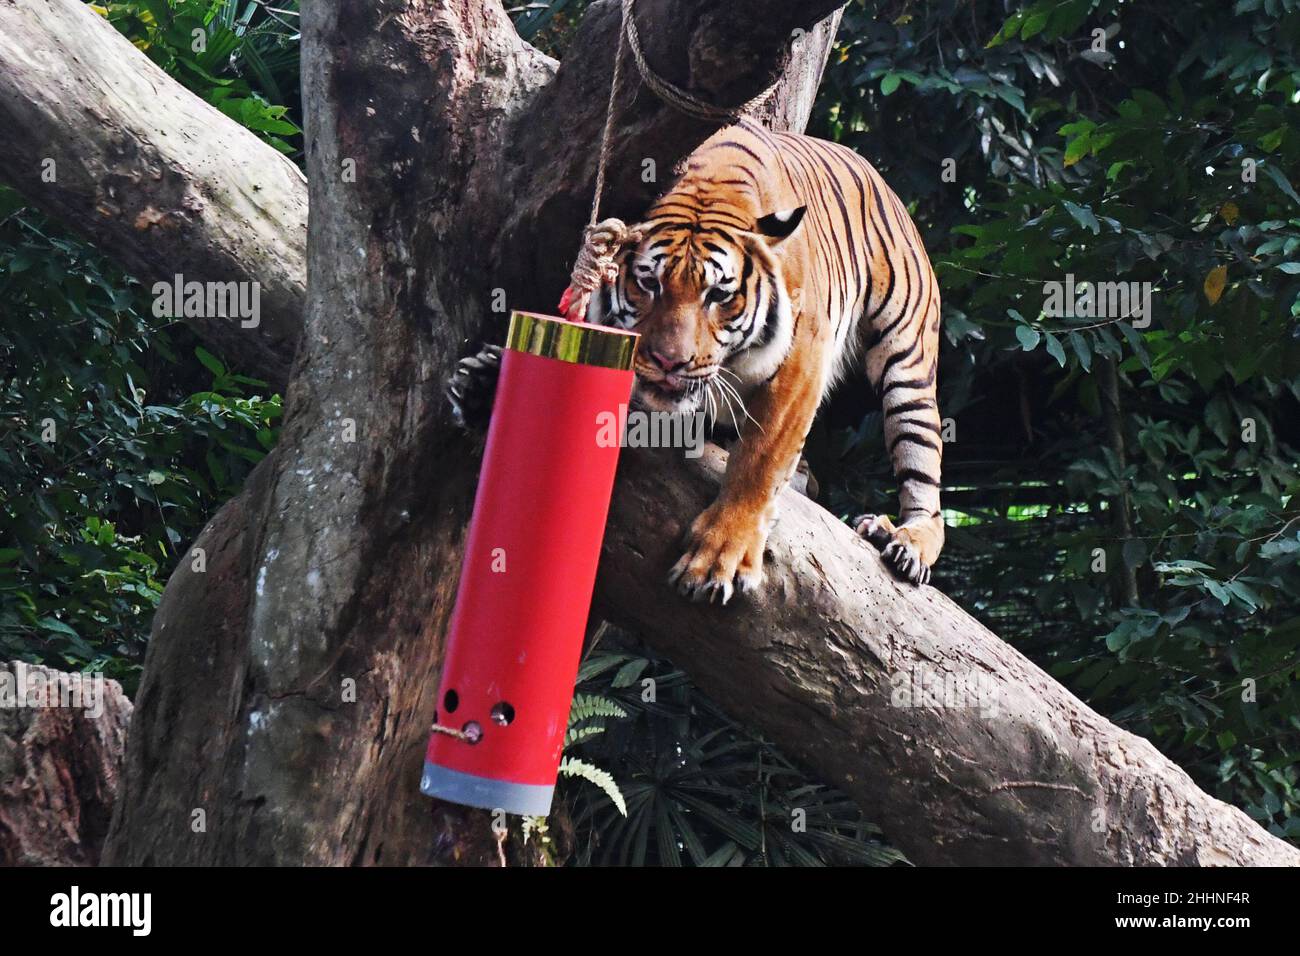 Singapour.25th janvier 2022.Un tigre de Malaisie tente de se rendre à la nourriture à l'intérieur d'un conteneur en forme de pétards, dans le cadre des célébrations du nouvel an lunaire chinois qui ont eu lieu dans le safari nocturne de Singapour le 25 janvier 2022.Crédit: Puis Chih Wey/Xinhua/Alay Live News Banque D'Images